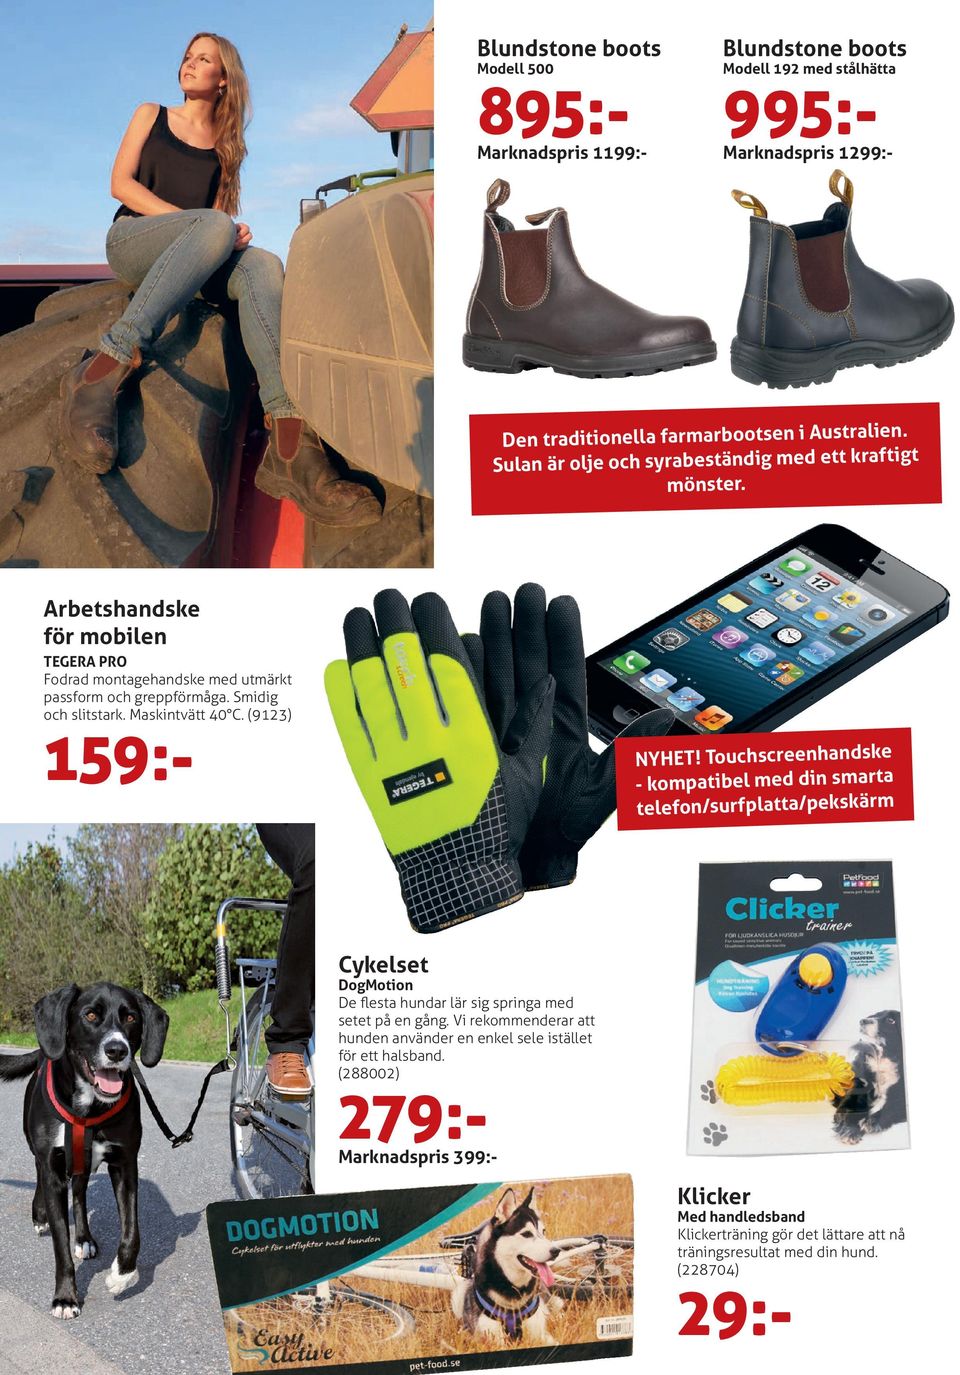 Maskintvätt 40 C. (9123) 159:- NYHET! Touchscreenhandske - kompatibel med din smarta telefon/surfplatta/pekskärm Cykelset DogMotion De flesta hundar lär sig springa med setet på en gång.